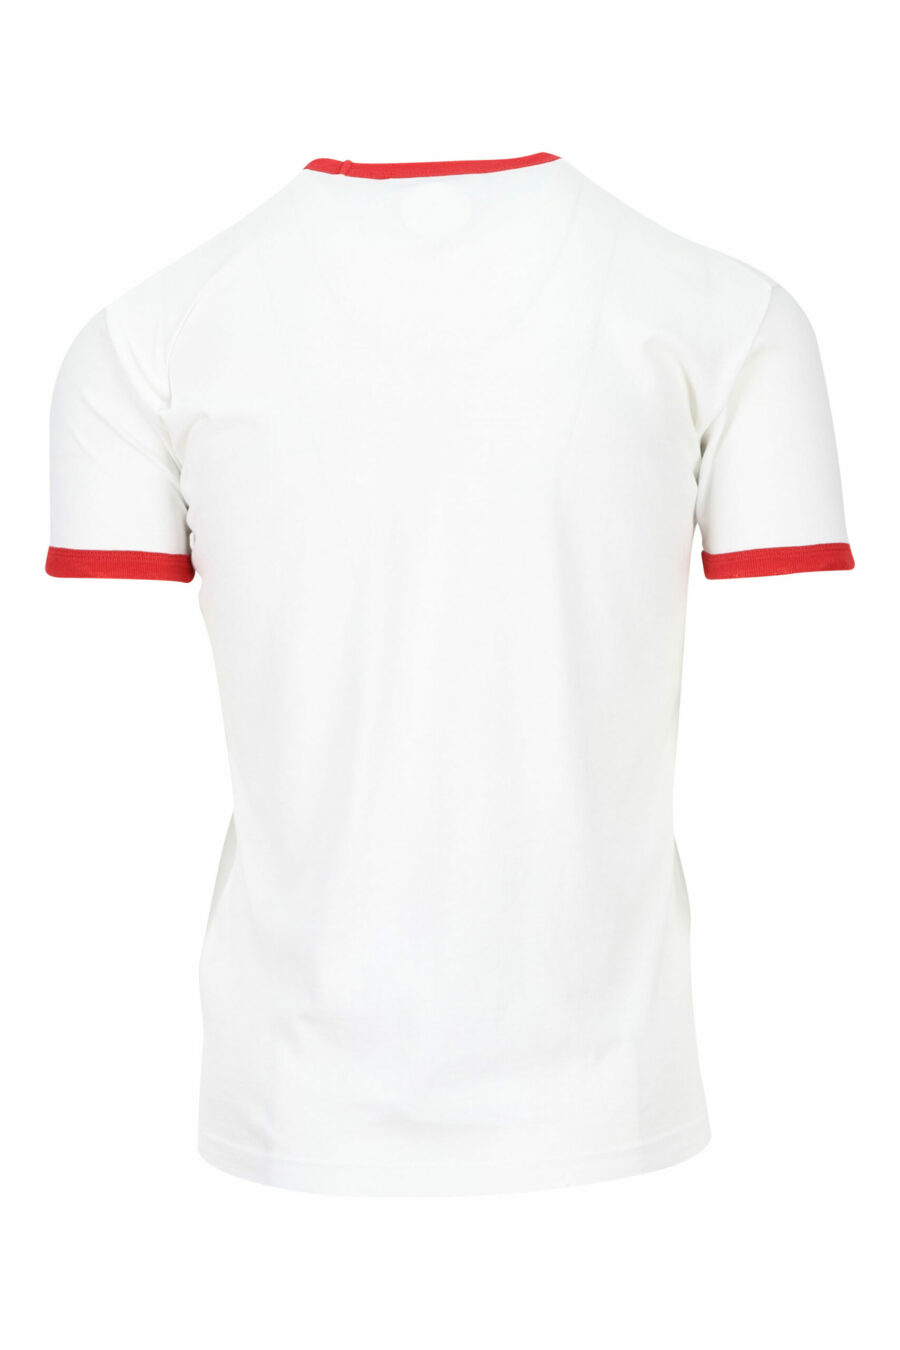 Weißes T-Shirt mit roten Details und Blattdruck - 8054148150792 1 skaliert